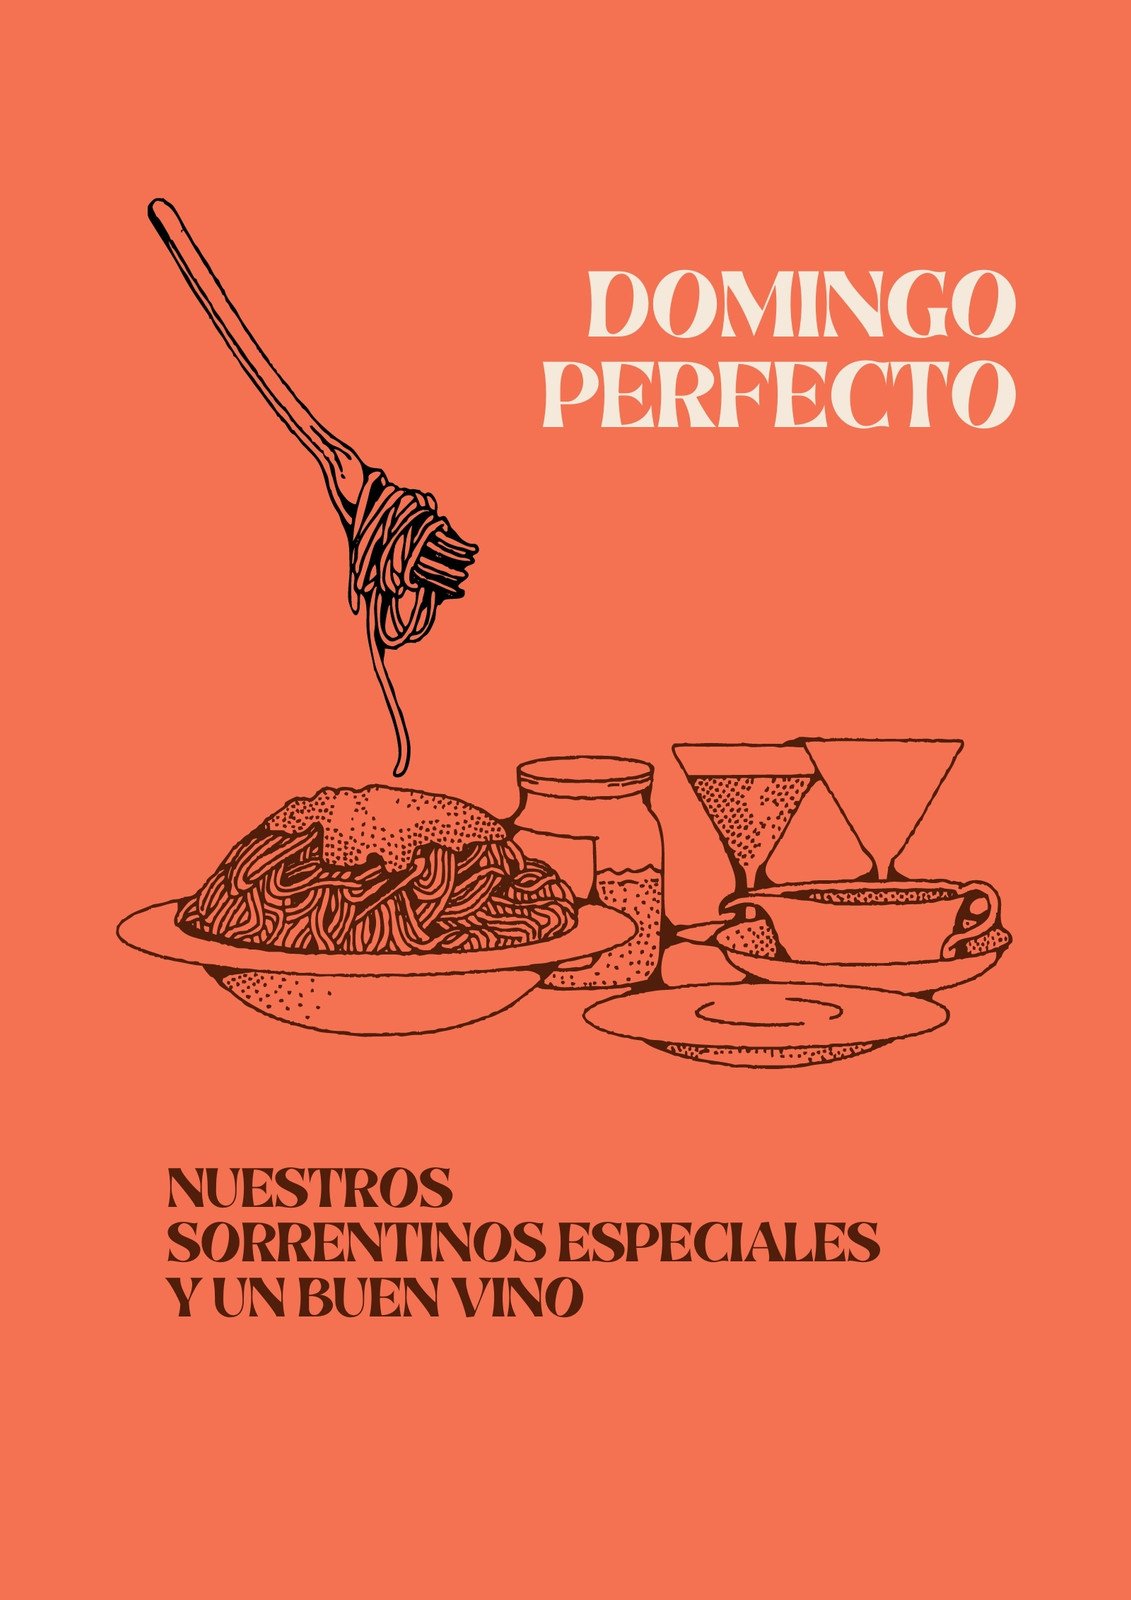 Flyer de diseño tradicional sobre pasta fresca, color terracota con plato de pastas y vino ilustrados